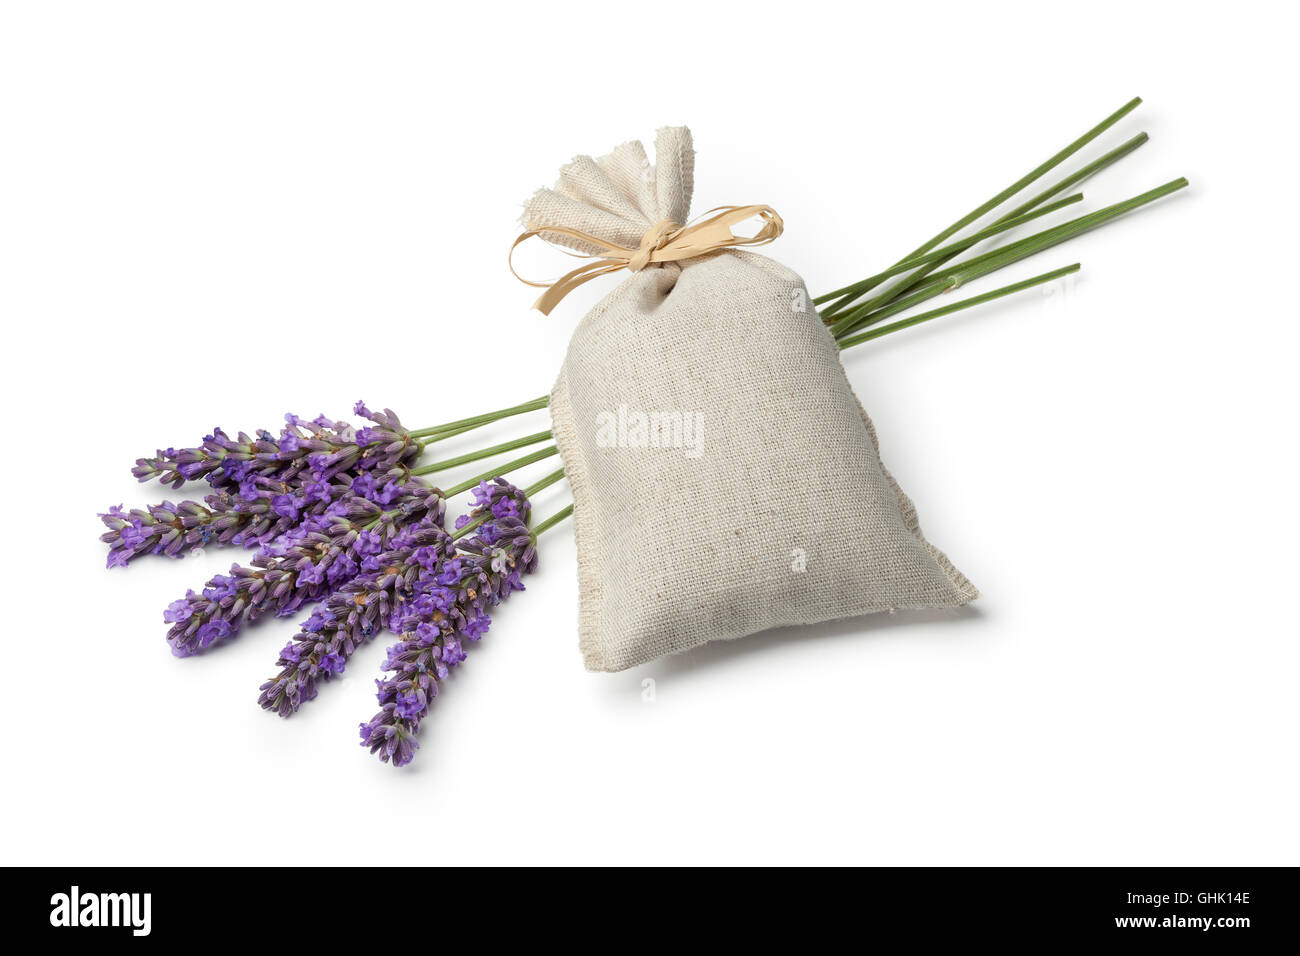 Leinen-Säckchen mit getrockneten Lavendelblüten und frischem Lavendel auf weißem Hintergrund Stockfoto